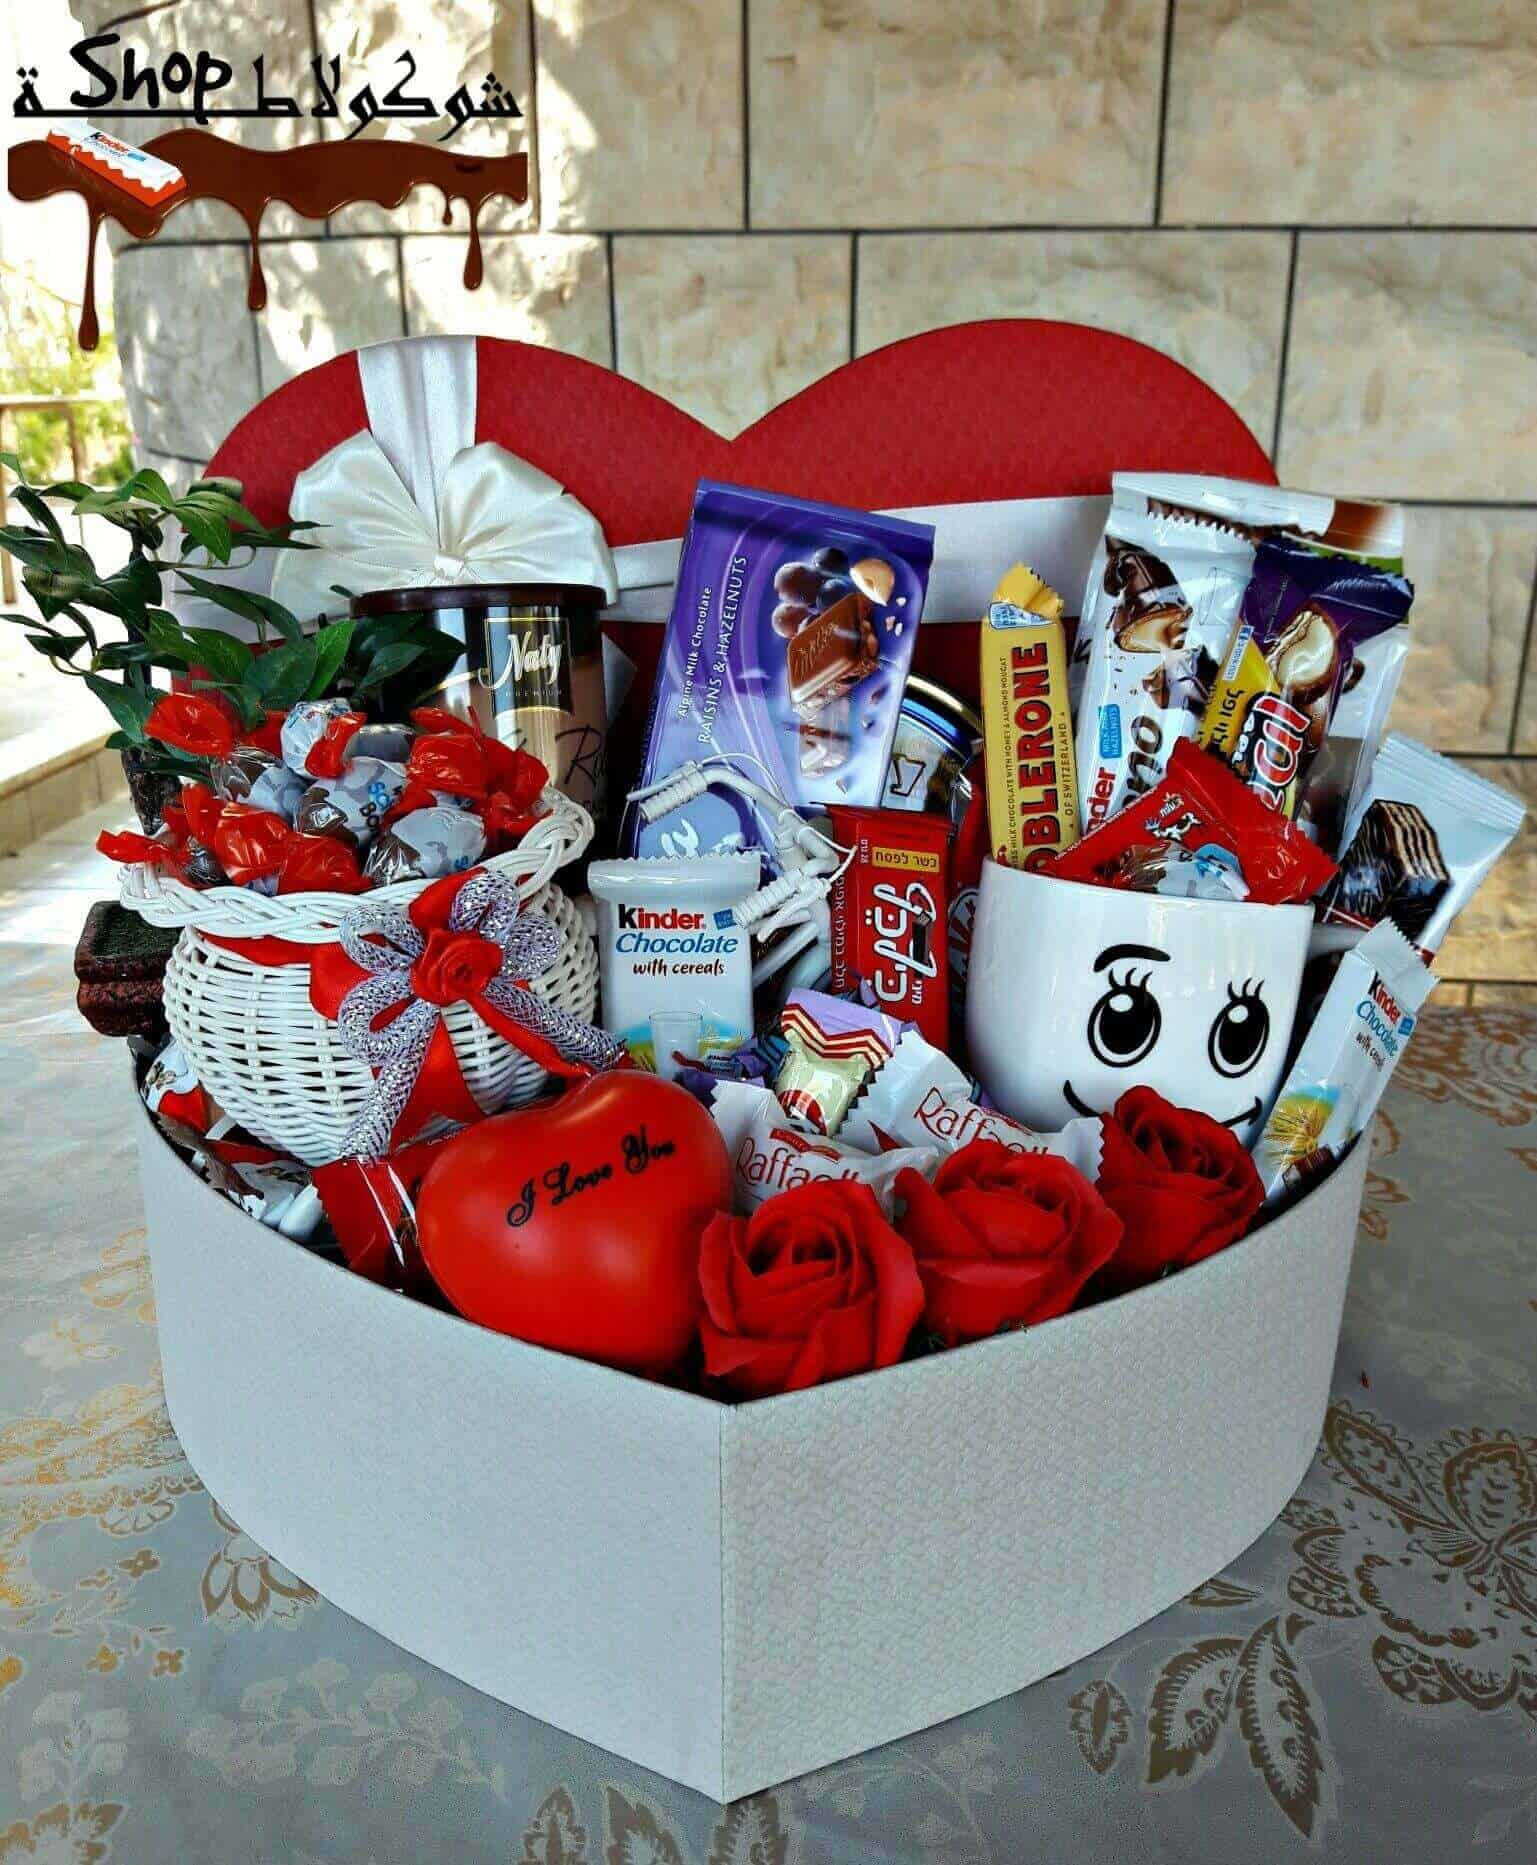 Valentines Day Gift Baskets
 Best Valentine s Day Gift Baskets Boxes & Gift Sets Ideas